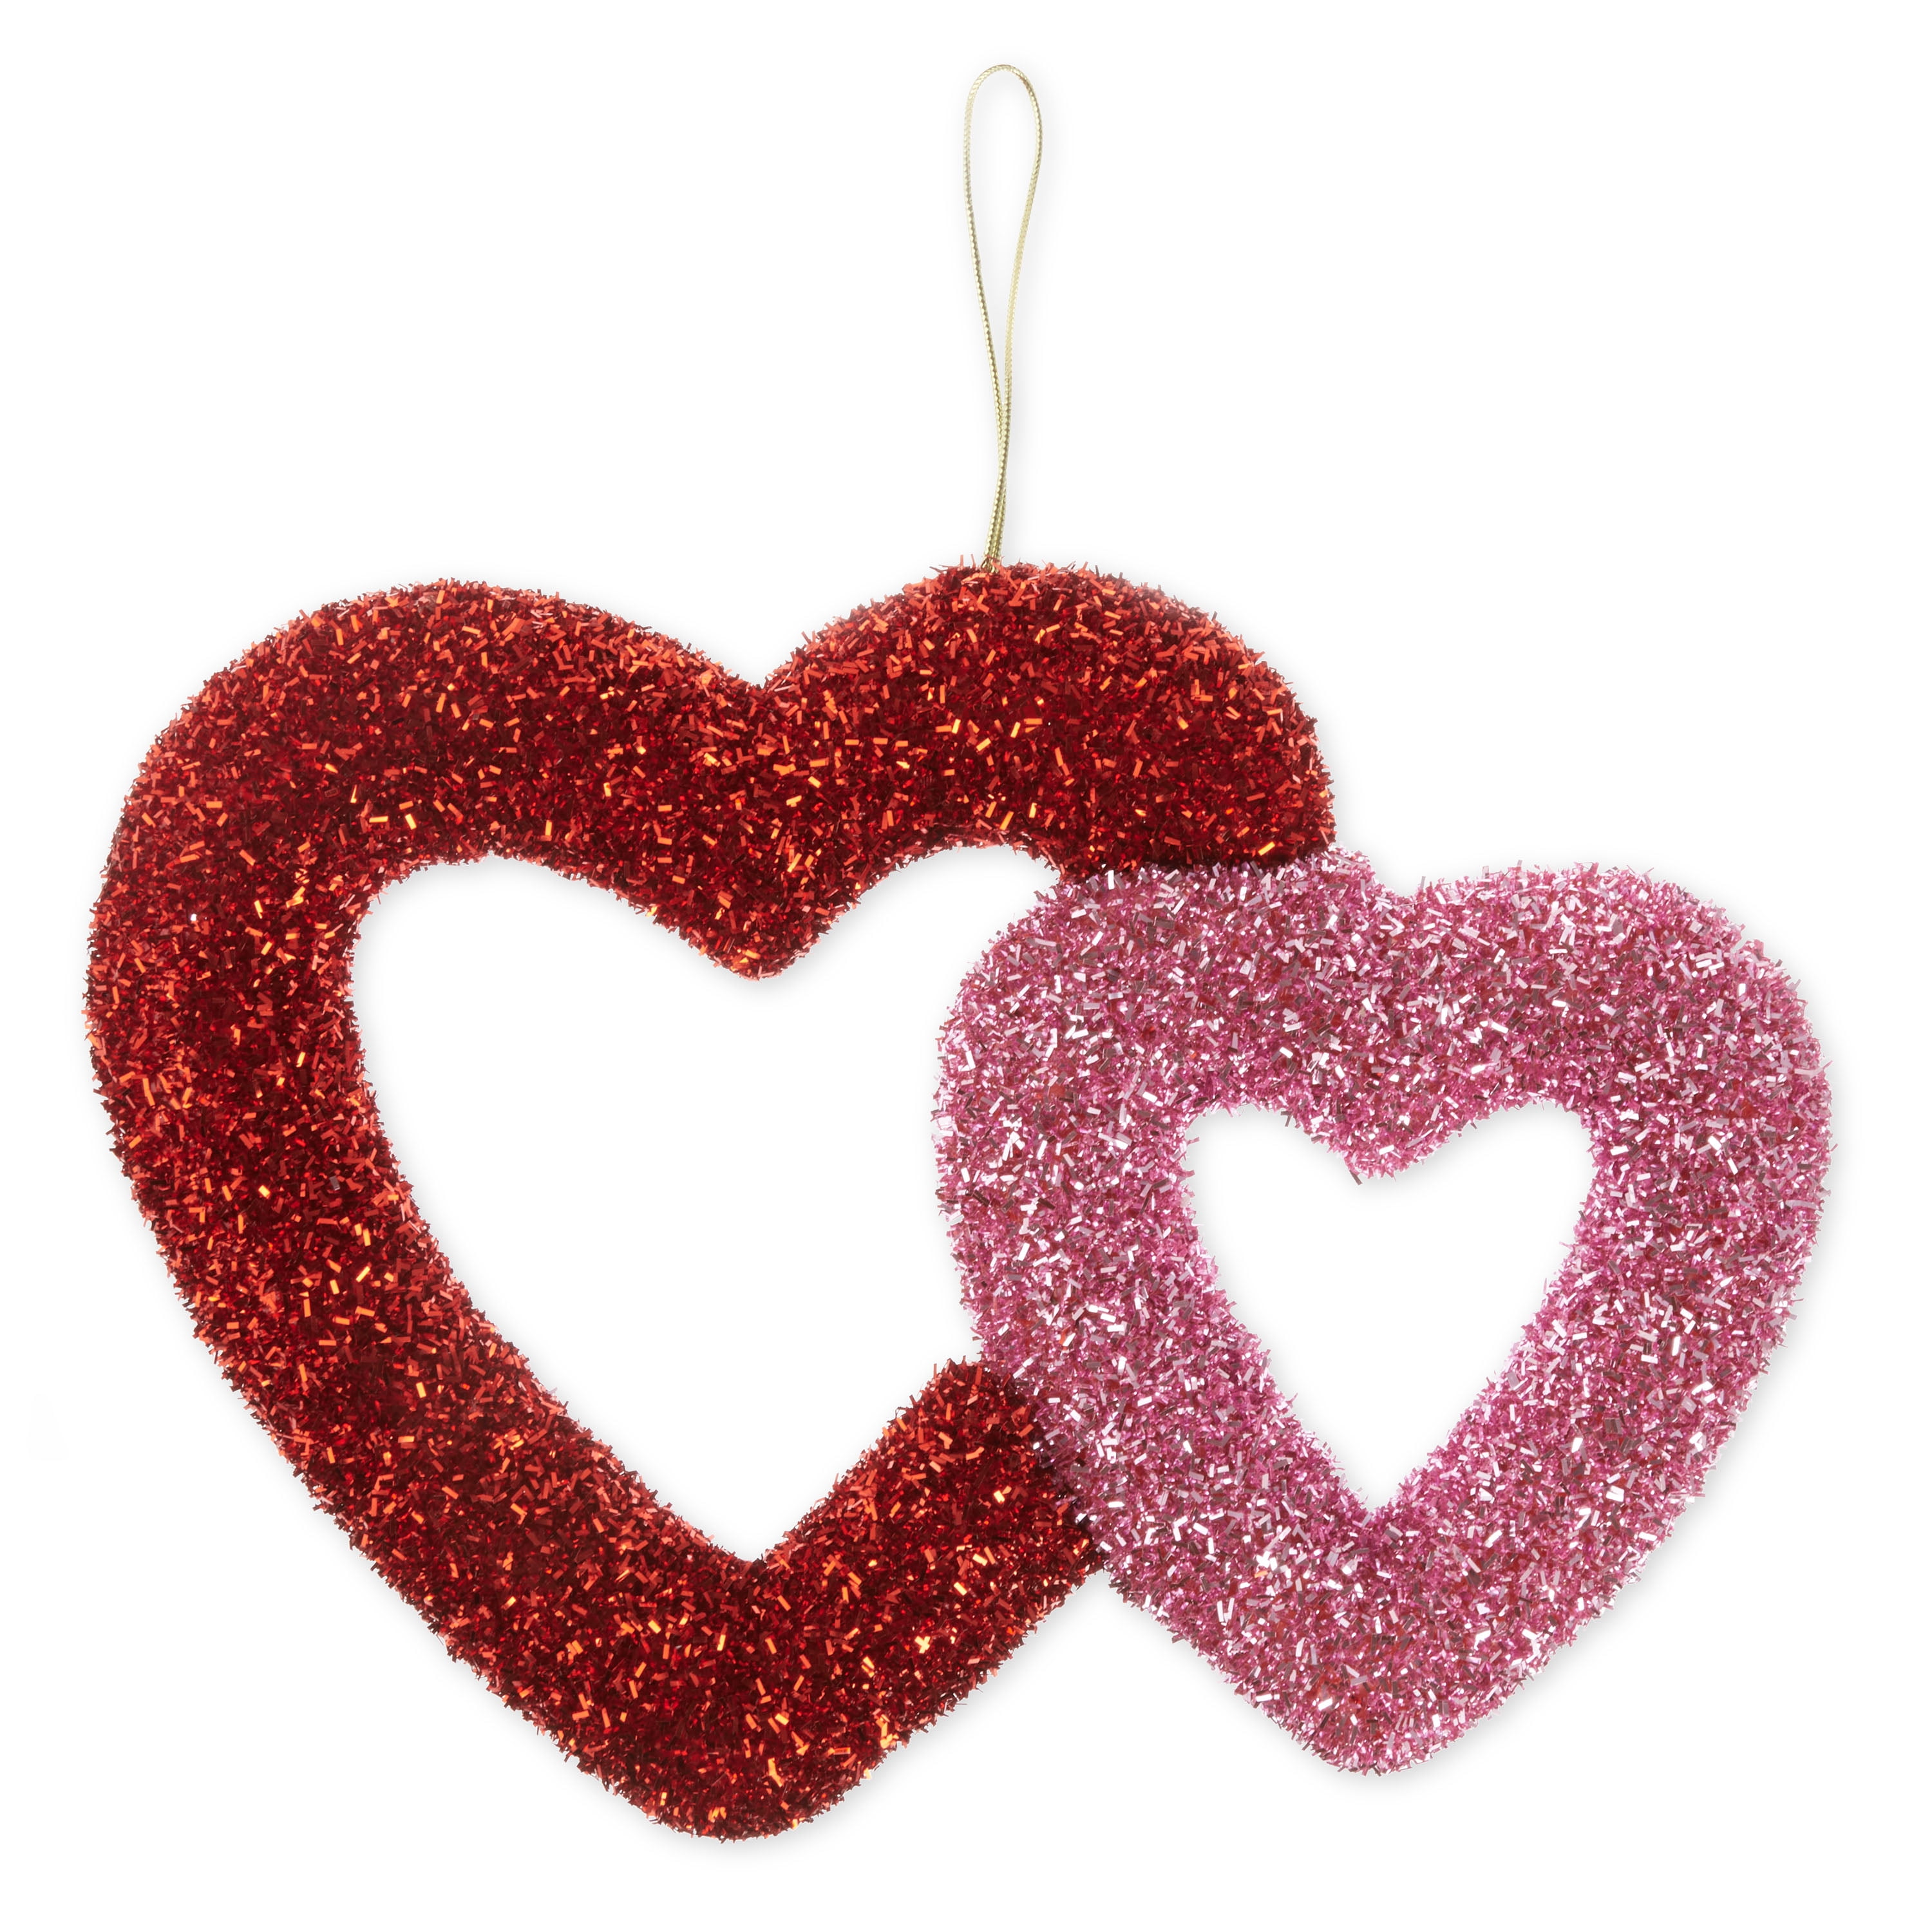 230 Pieces Valentine's Day Hanging Heart Swirls Glitter Heart Swirl  Valentines Day Hanging Heart Decorations for Valentine's Day Decorations  Bridal